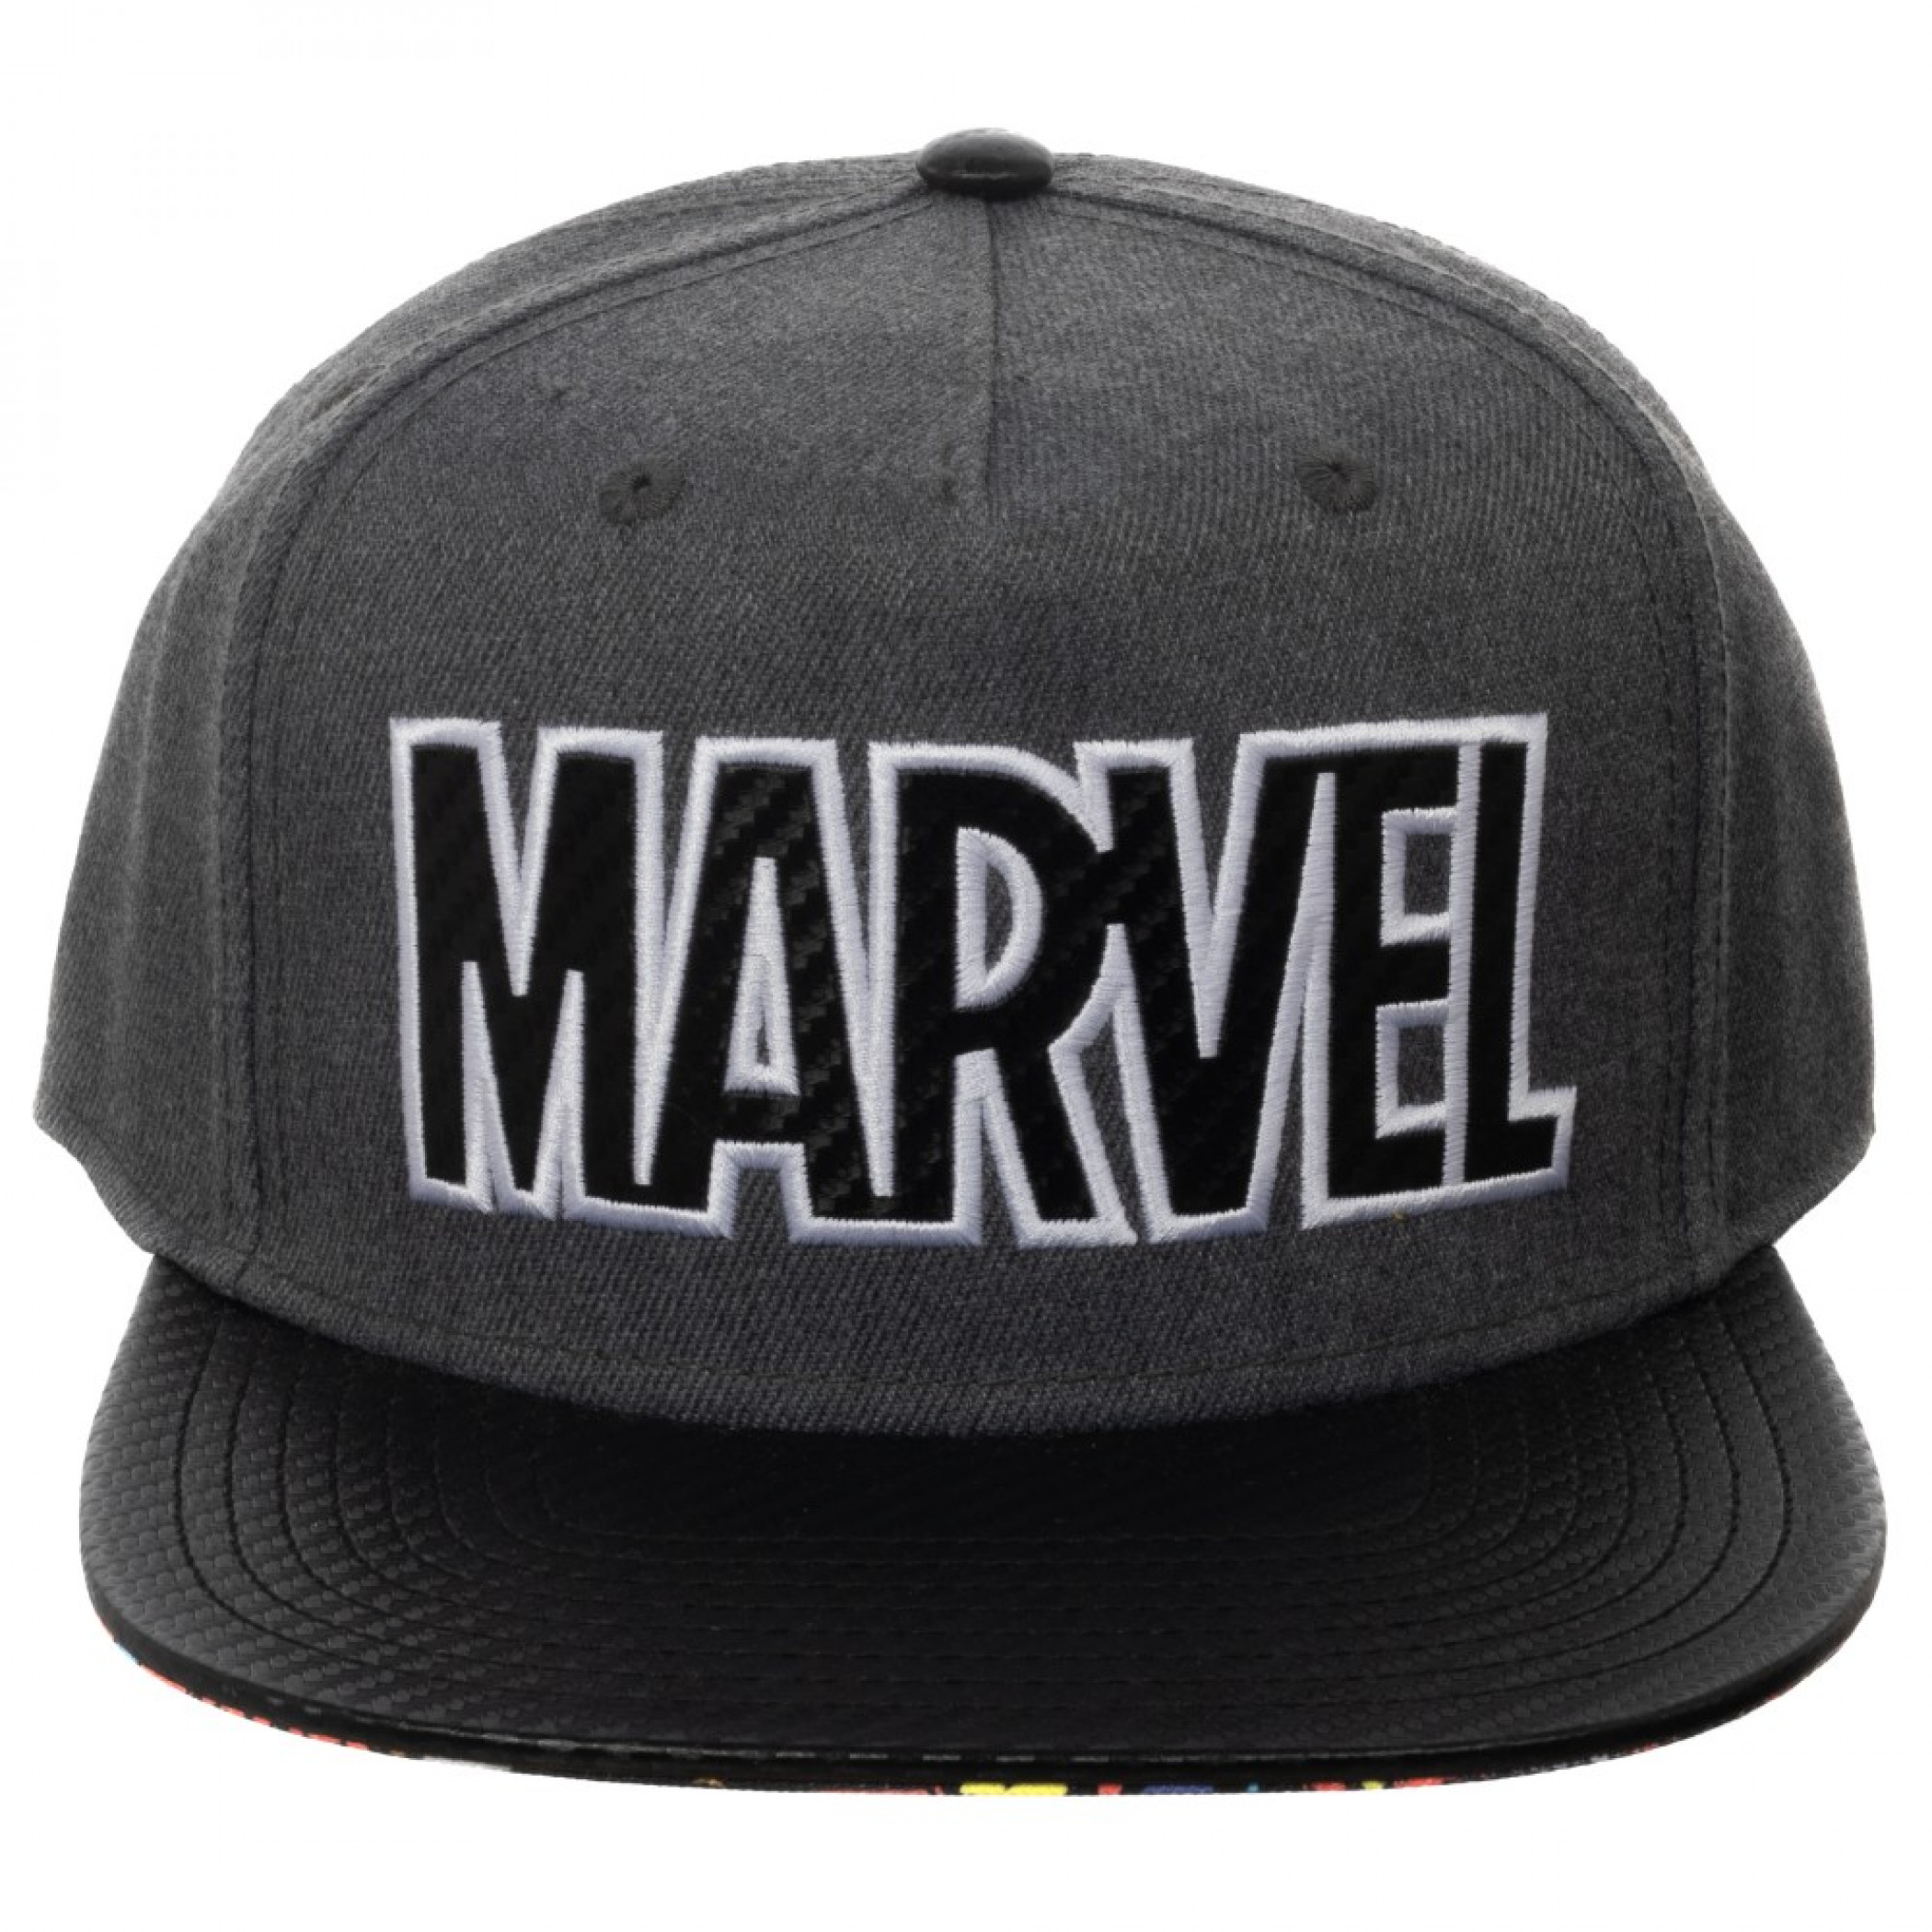 Marvel Logo Carbon Fiber Adjustable Grey Snapback